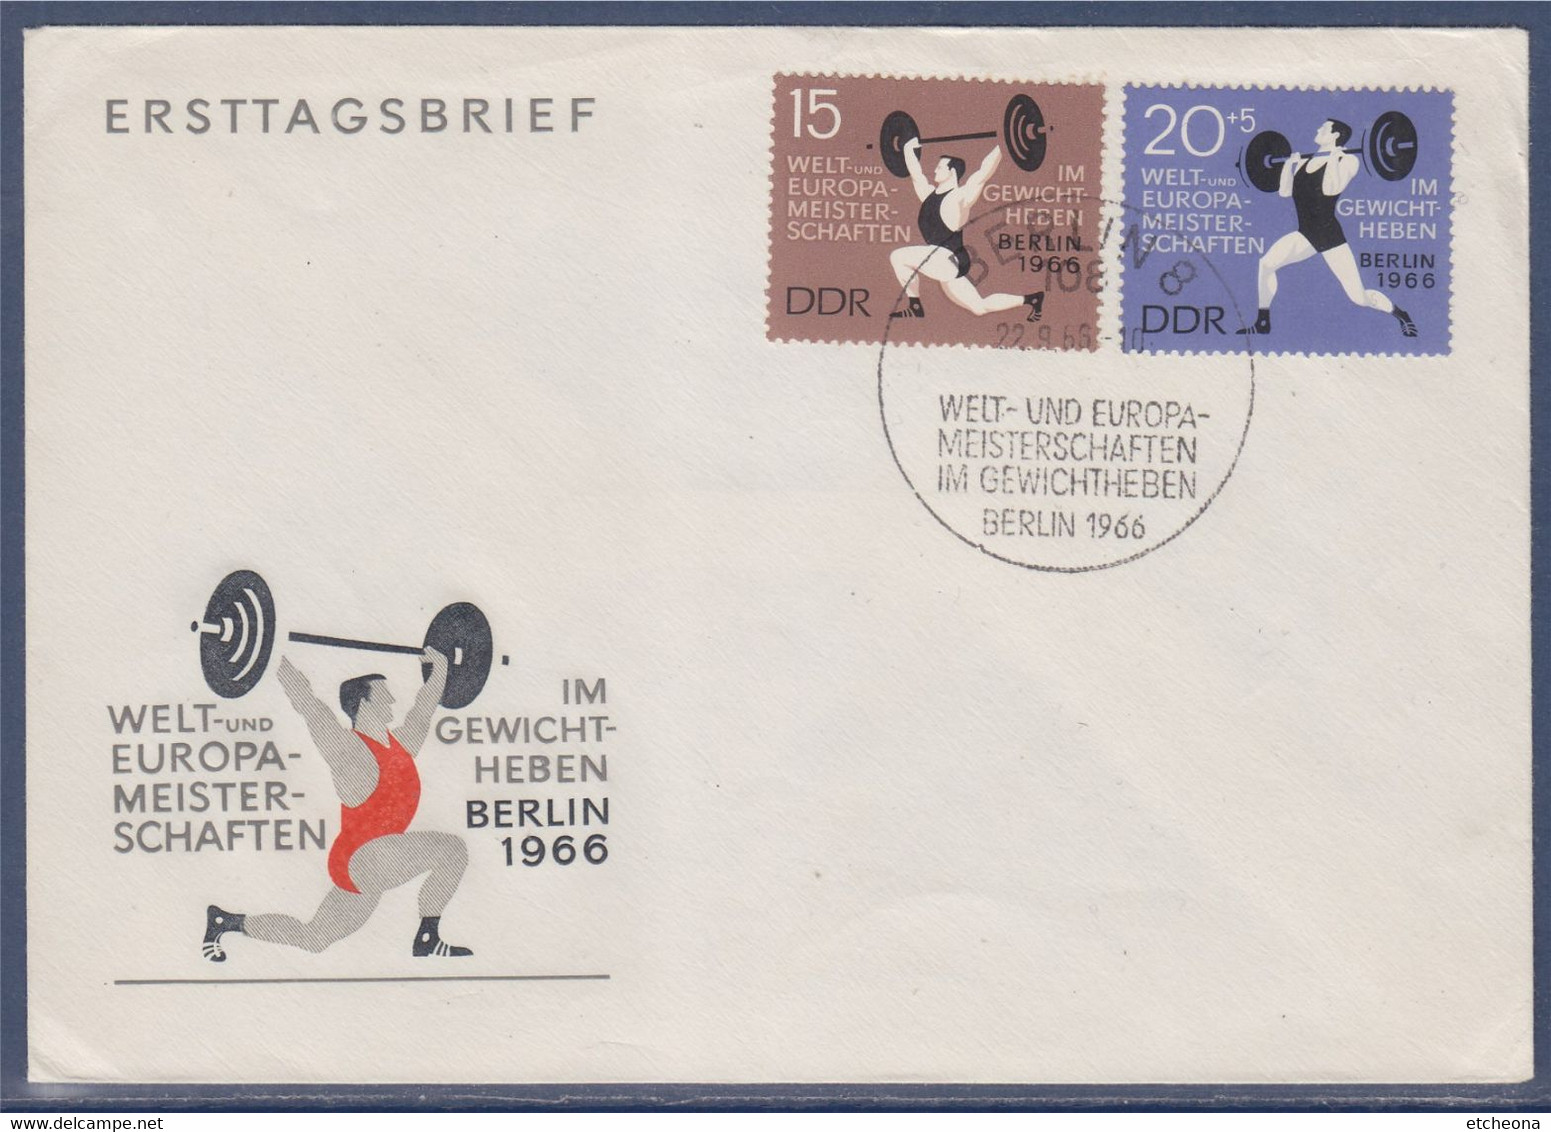 Championnats Du Monde Et D'Europe D'haltérophilie Berlin 1966 Enveloppe 2 Timbres Allemagne - Pesistica